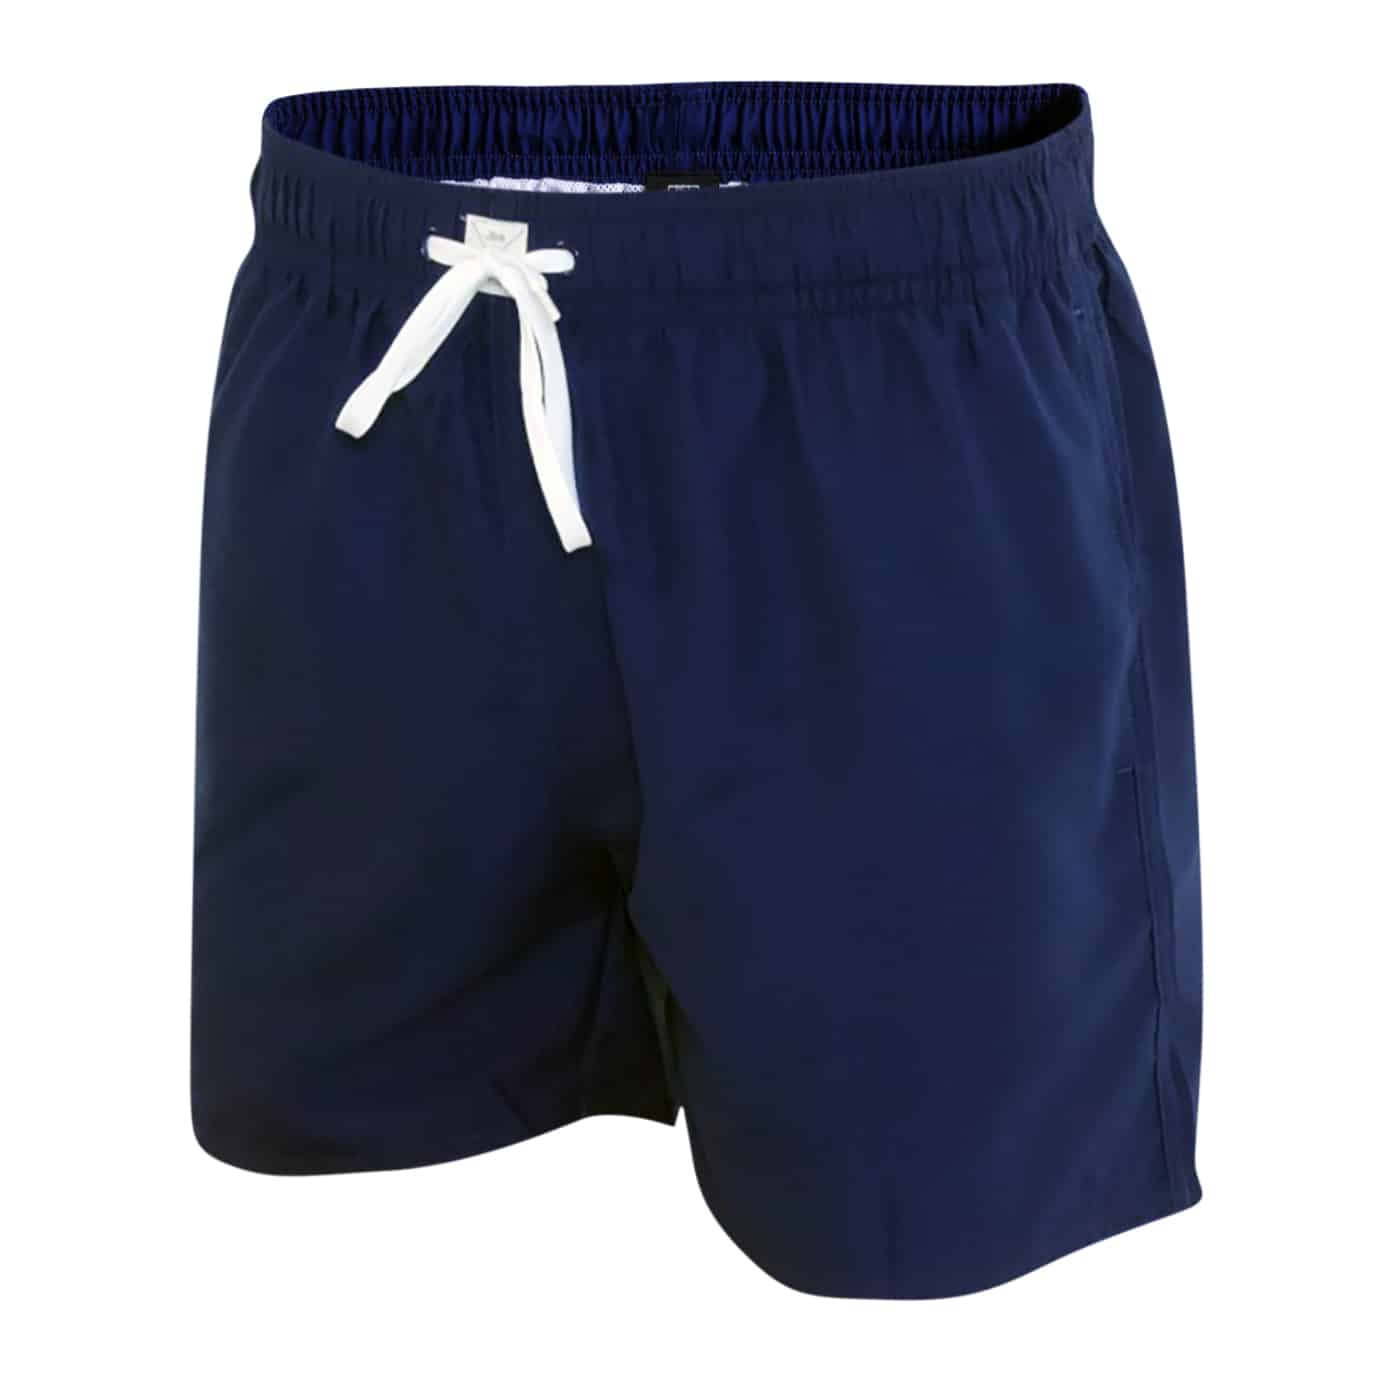 JBS swim shorts - 3XL - NAVY